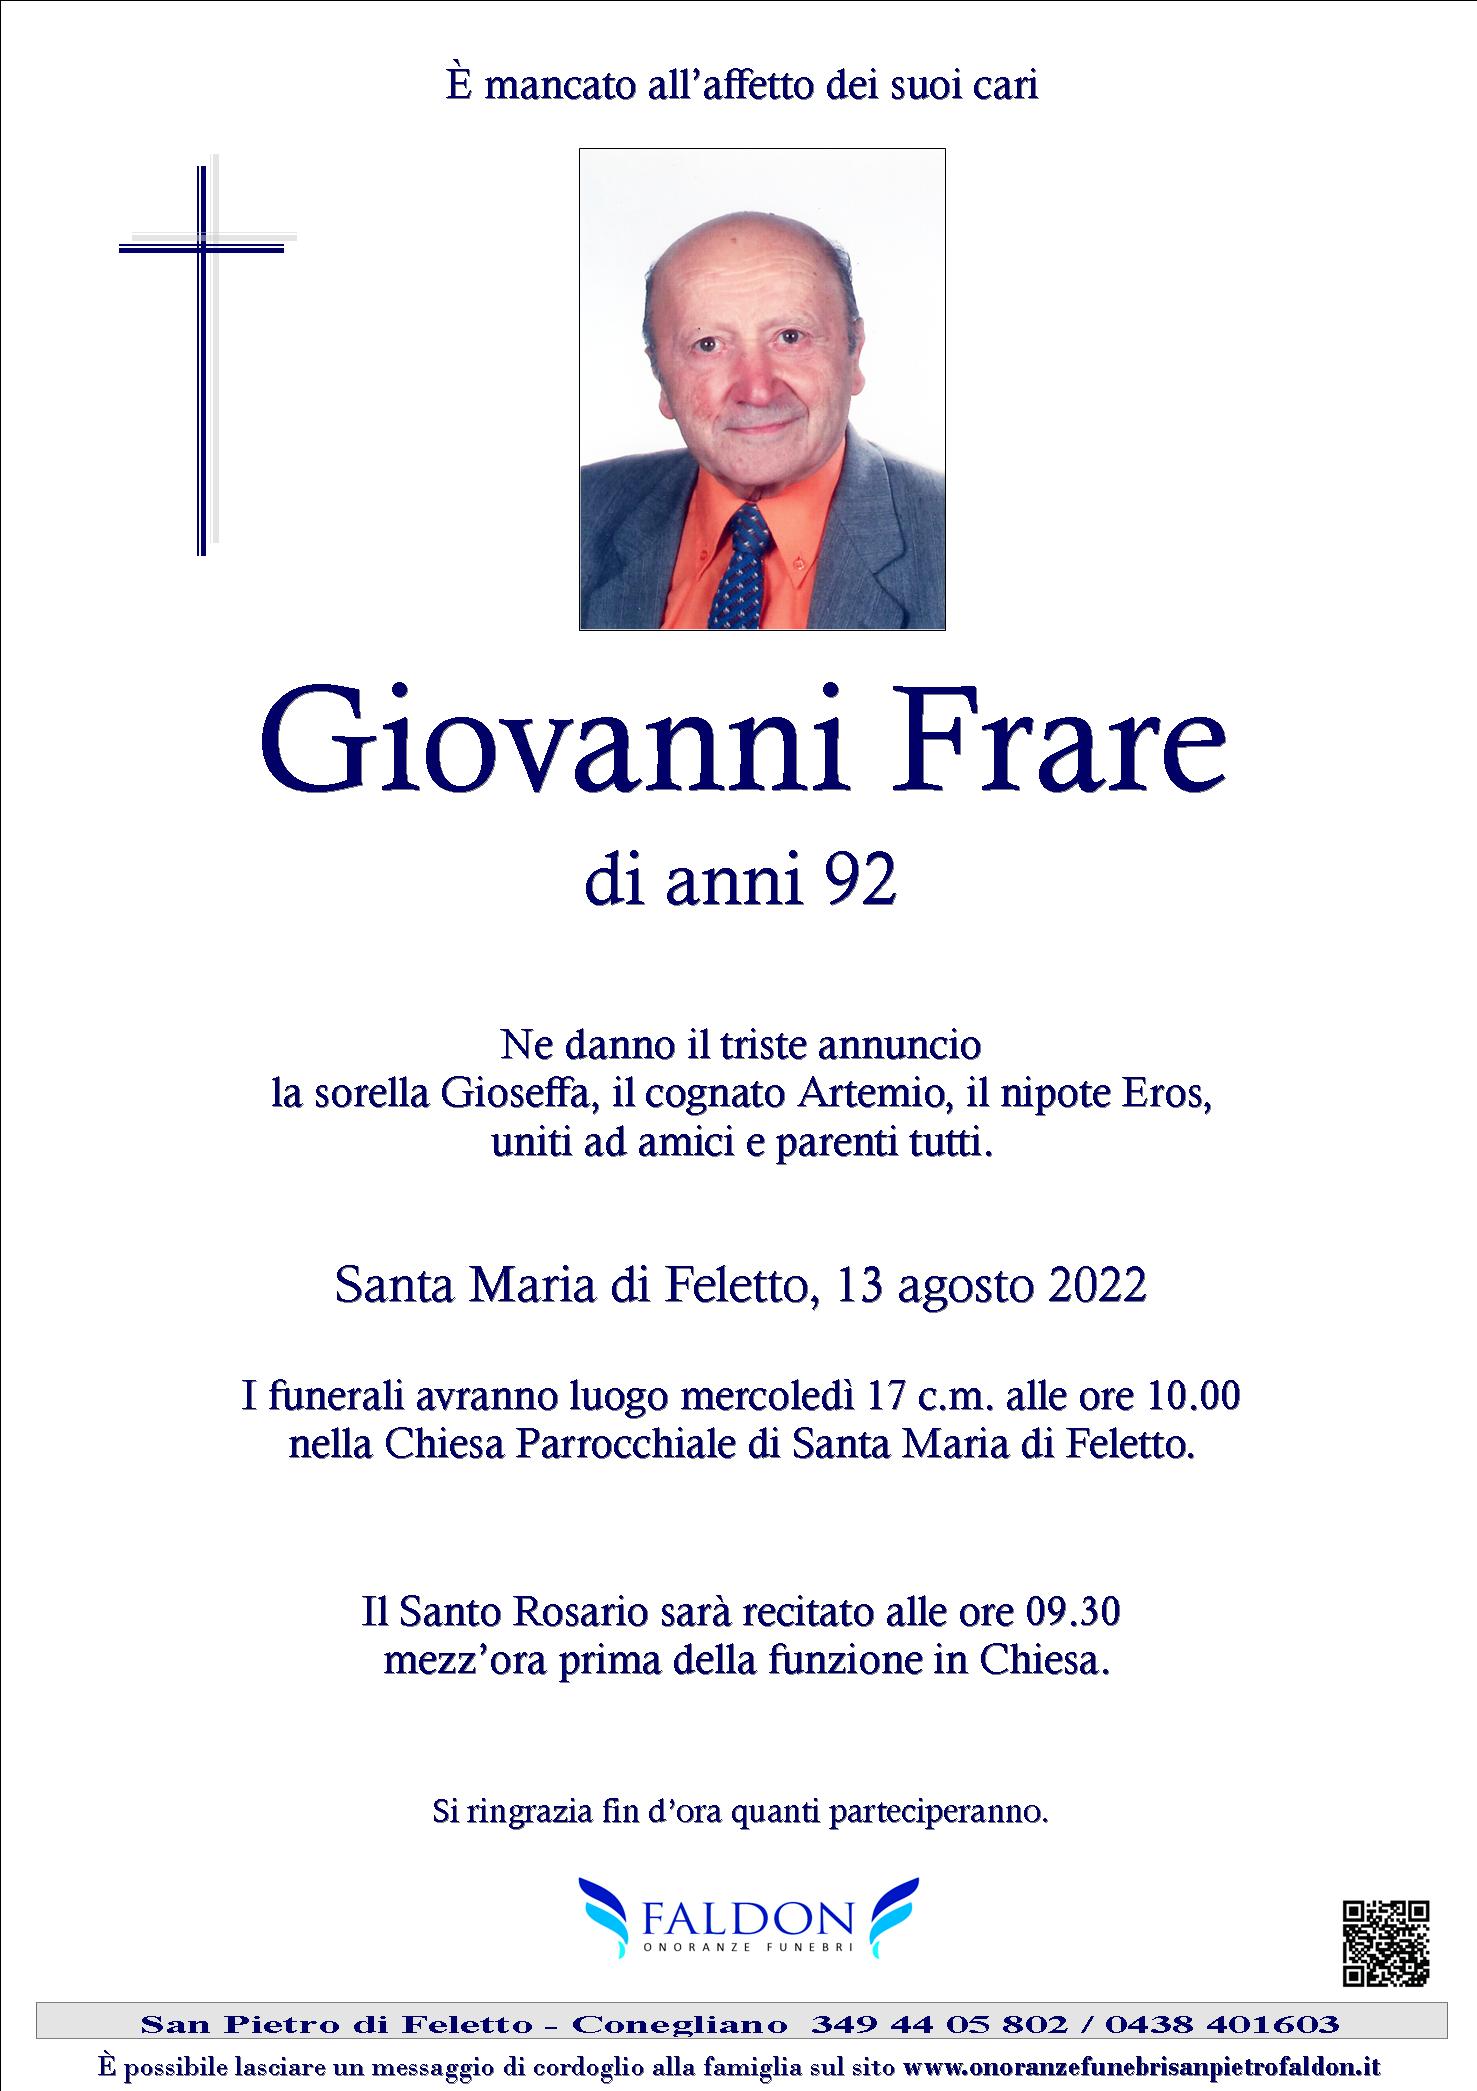 Giovanni Frare